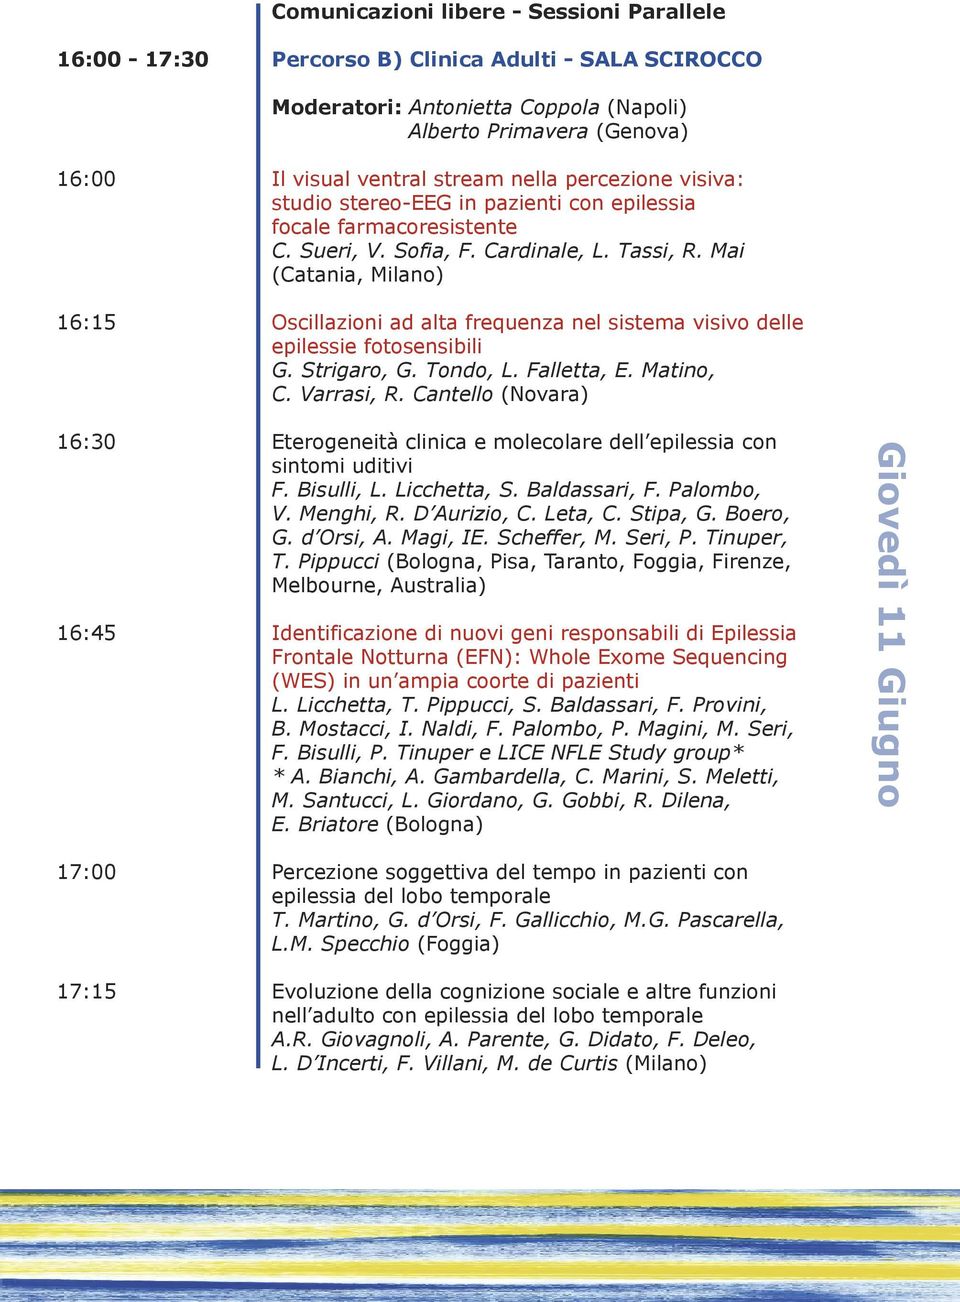 Mai (Catania, Milano) 16:15 Oscillazioni ad alta frequenza nel sistema visivo delle epilessie fotosensibili G. Strigaro, G. Tondo, L. Falletta, E. Matino, C. Varrasi, R.